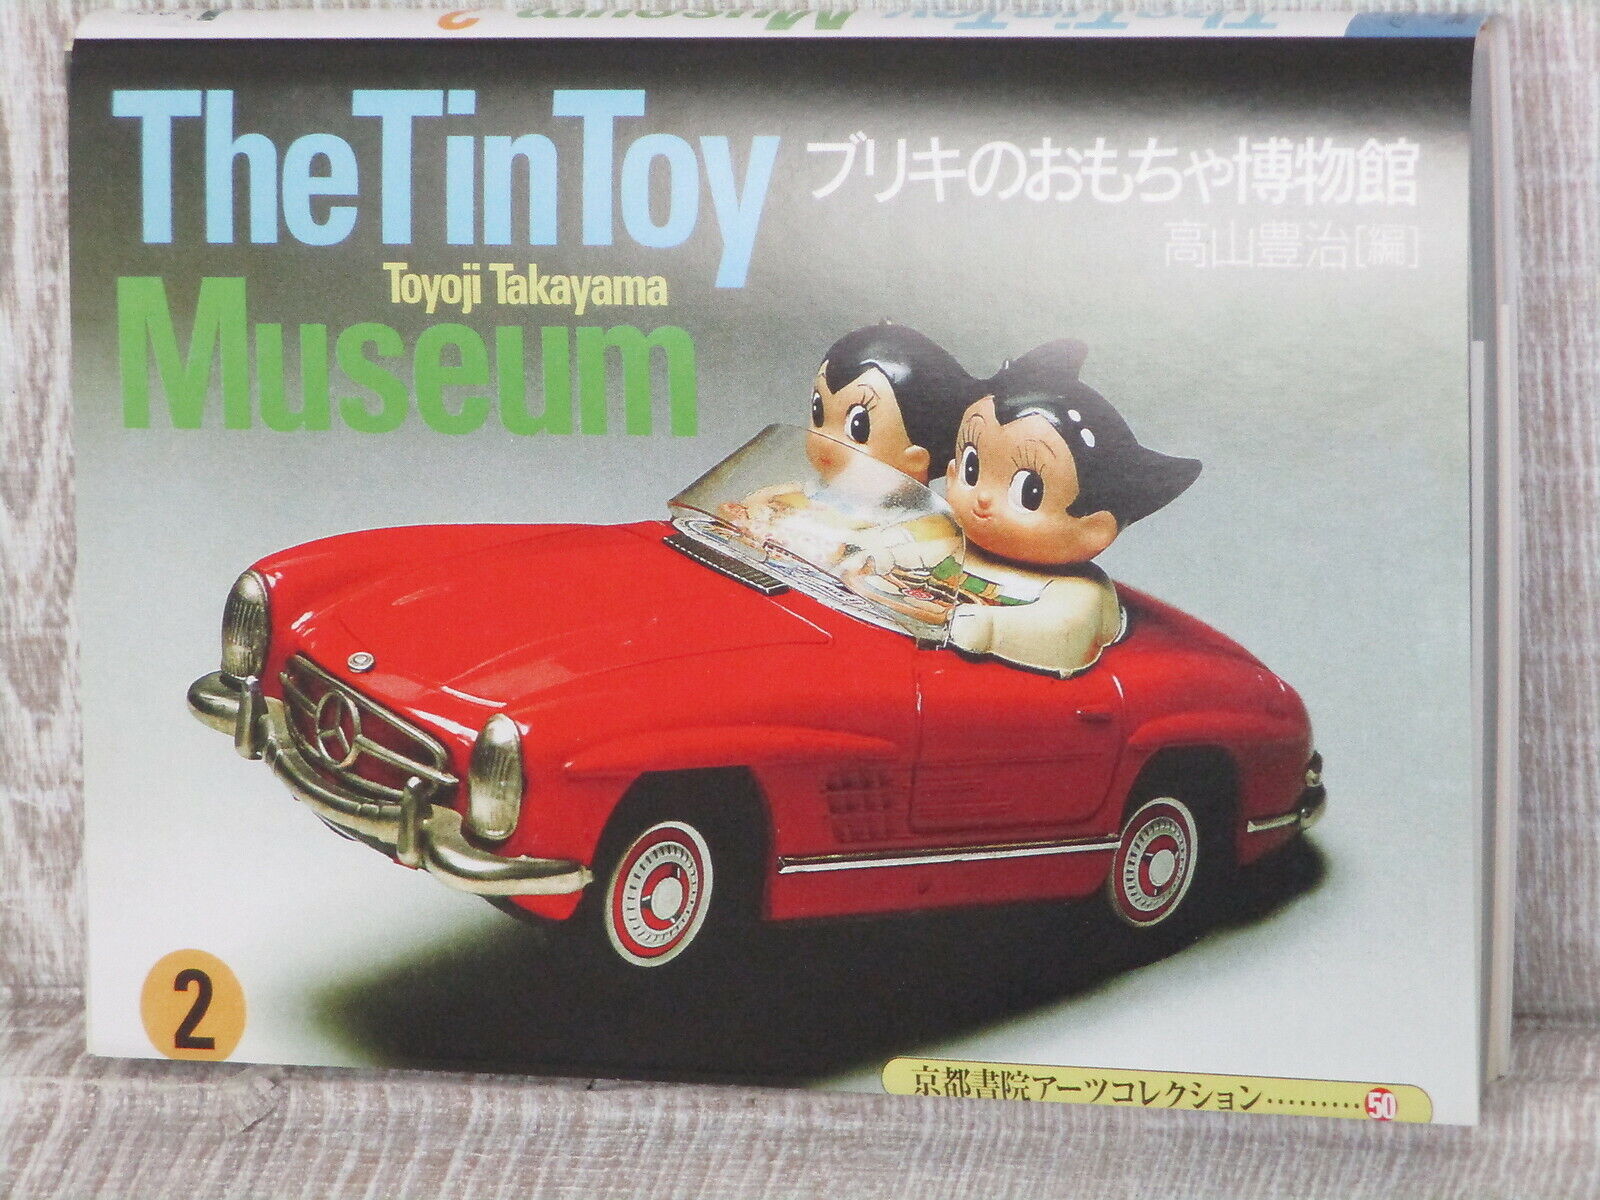 TIN TOY MUSEUM 2 Art Photo Book Japan Tomiyama Masudaya Yonezawa Ichiko 1999